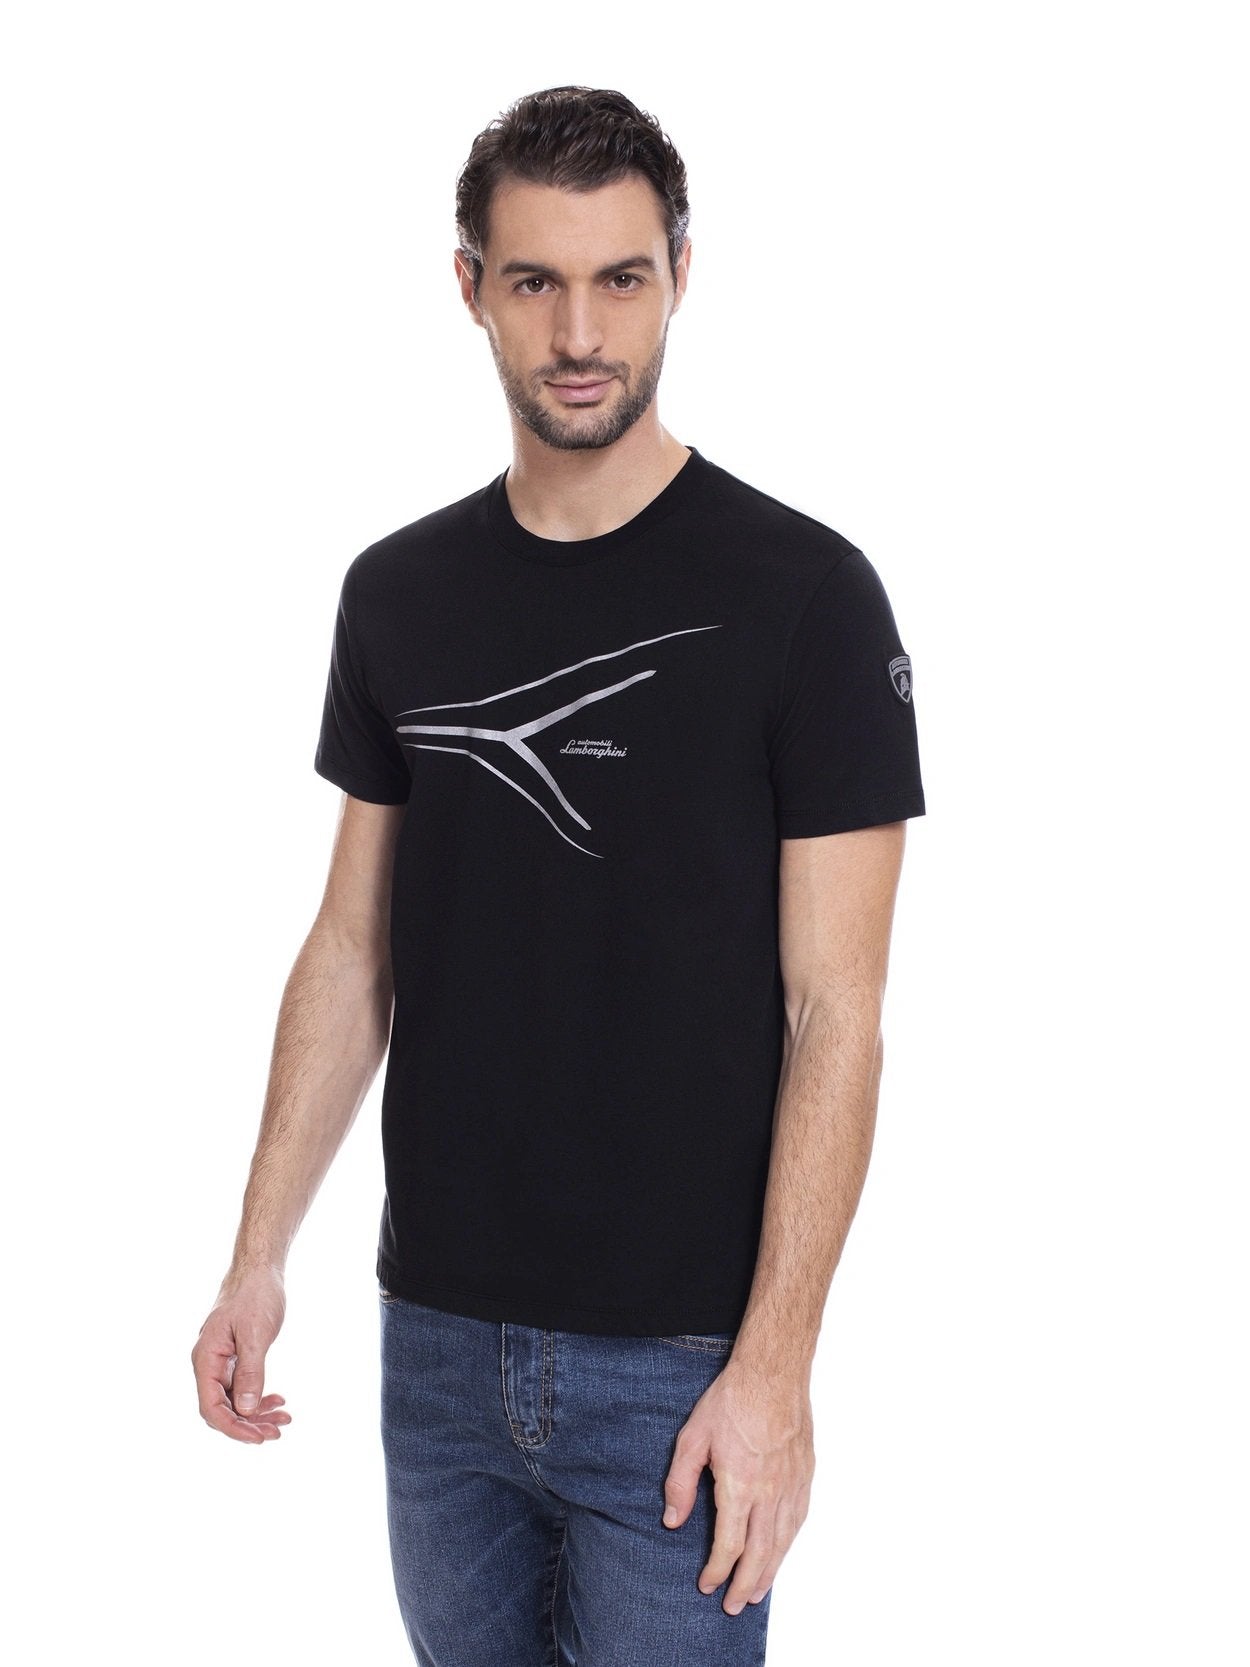 Automobili Lamborghini Reflex Print T-Shirt - Pegasus Black